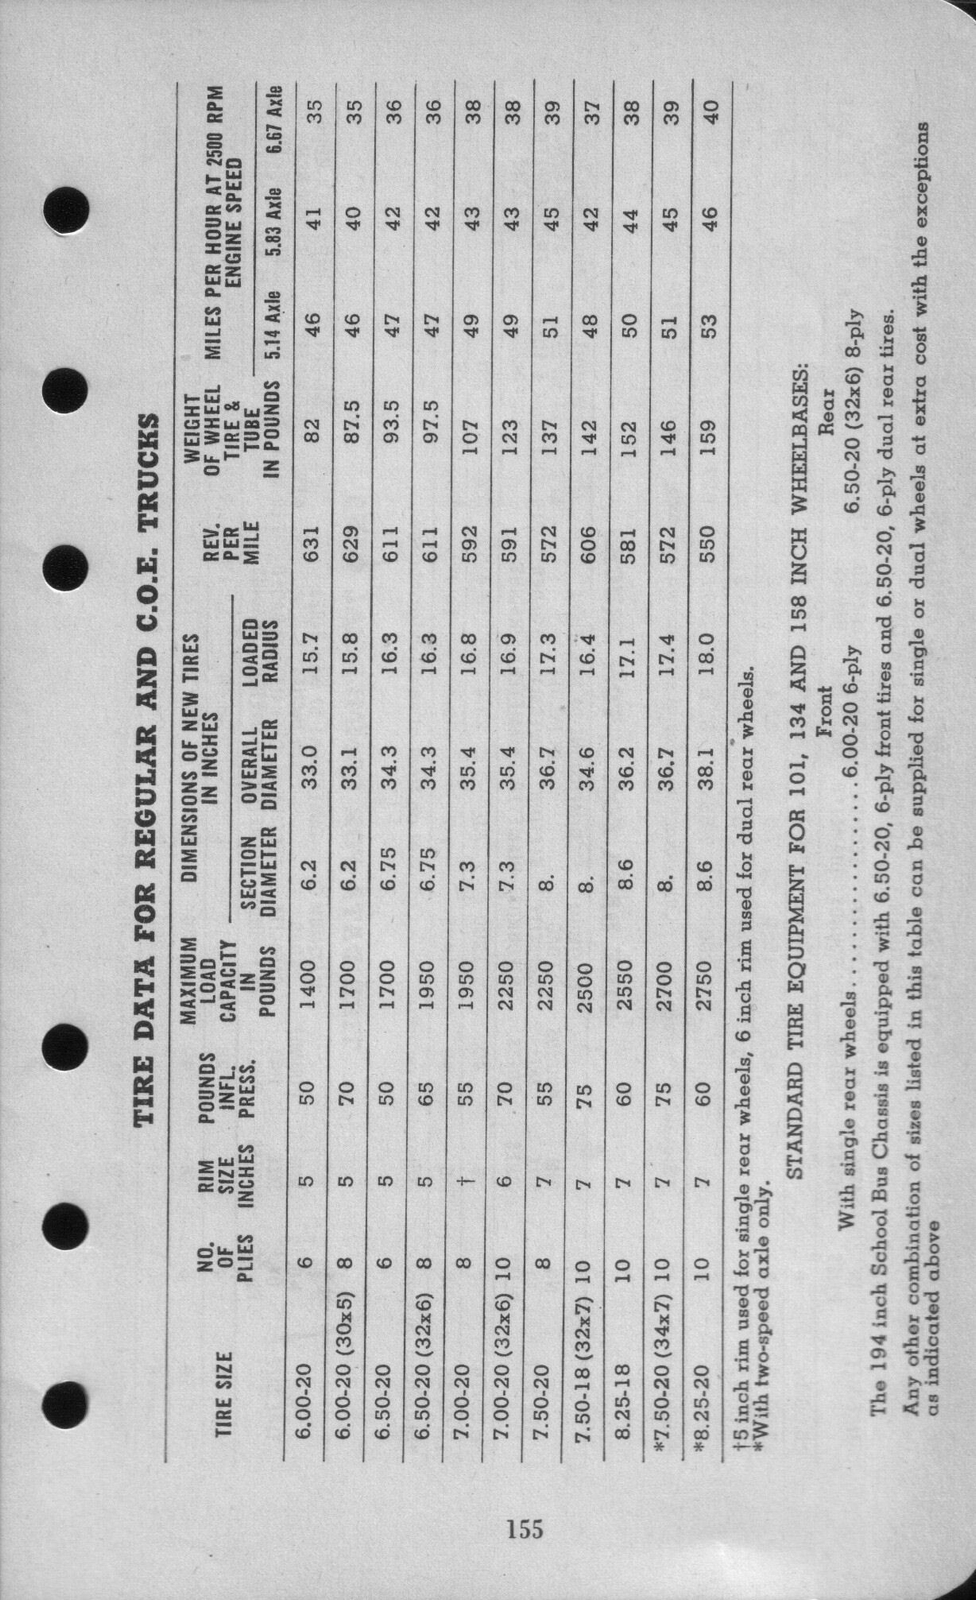 n_1942 Ford Salesmans Reference Manual-155.jpg